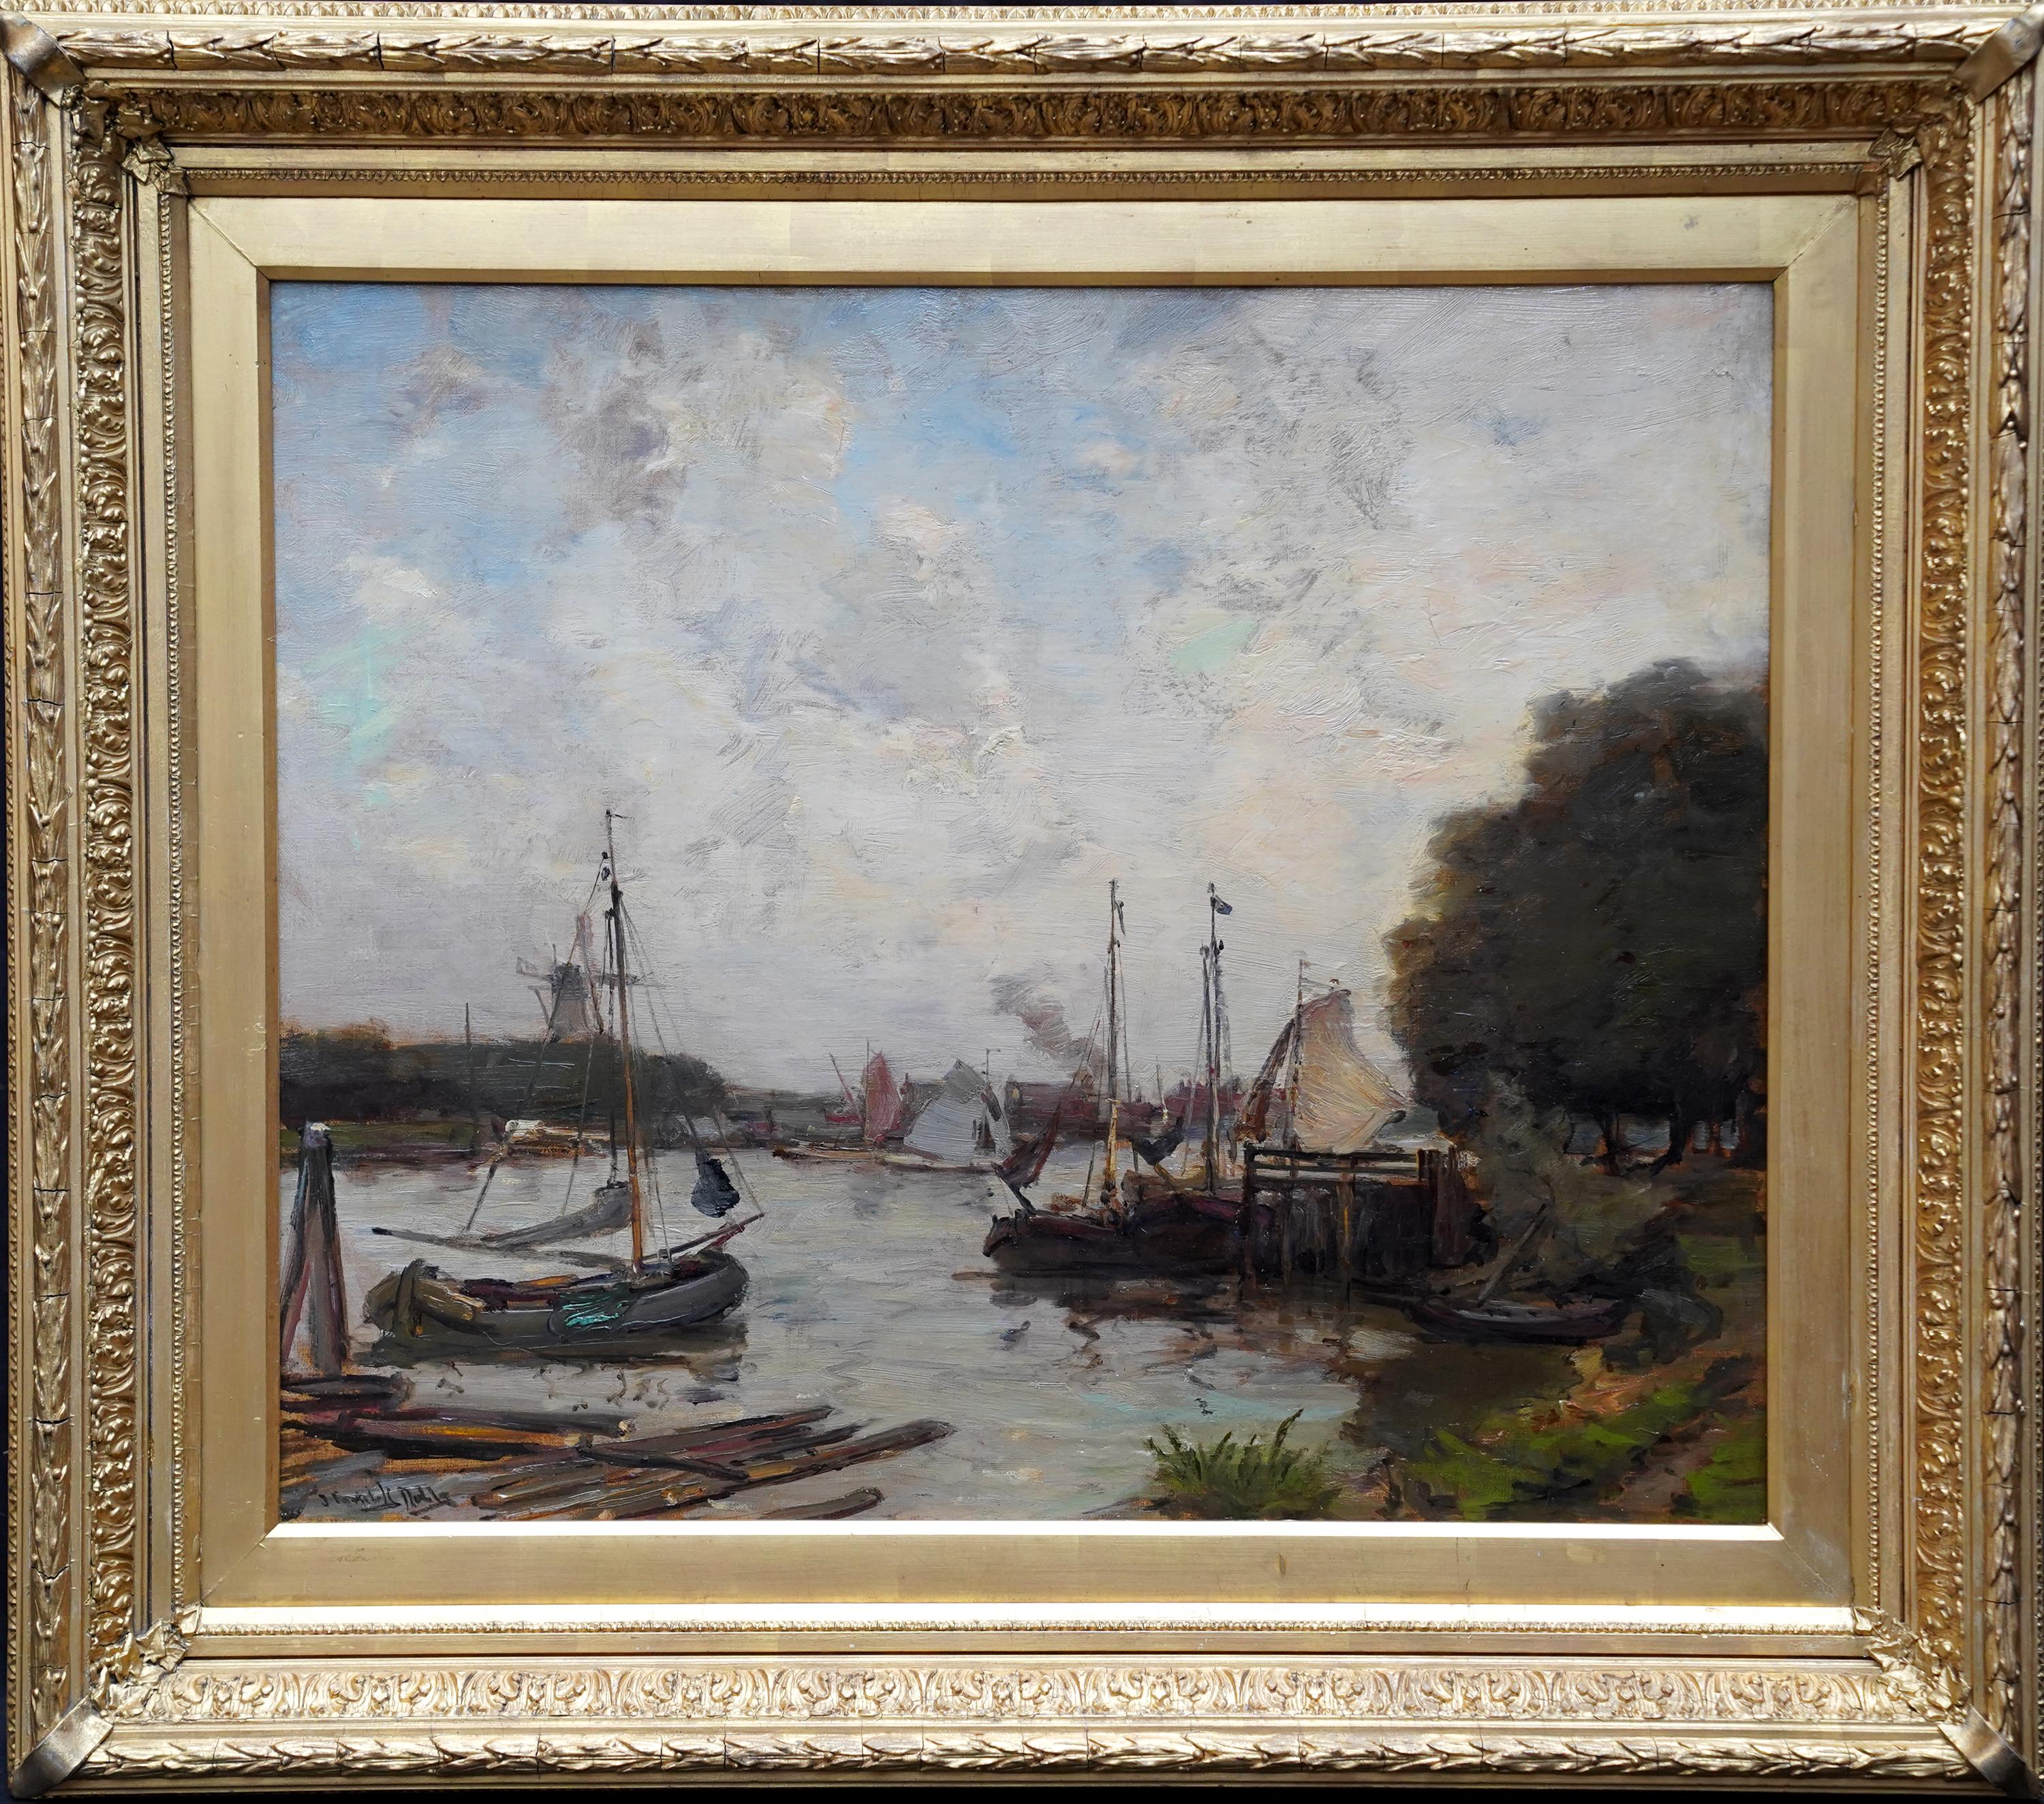 Landscape Painting James Campbell Noble - Harbour Seascape - peinture à l'huile marine impressionniste écossaise de l'époque édouardienne